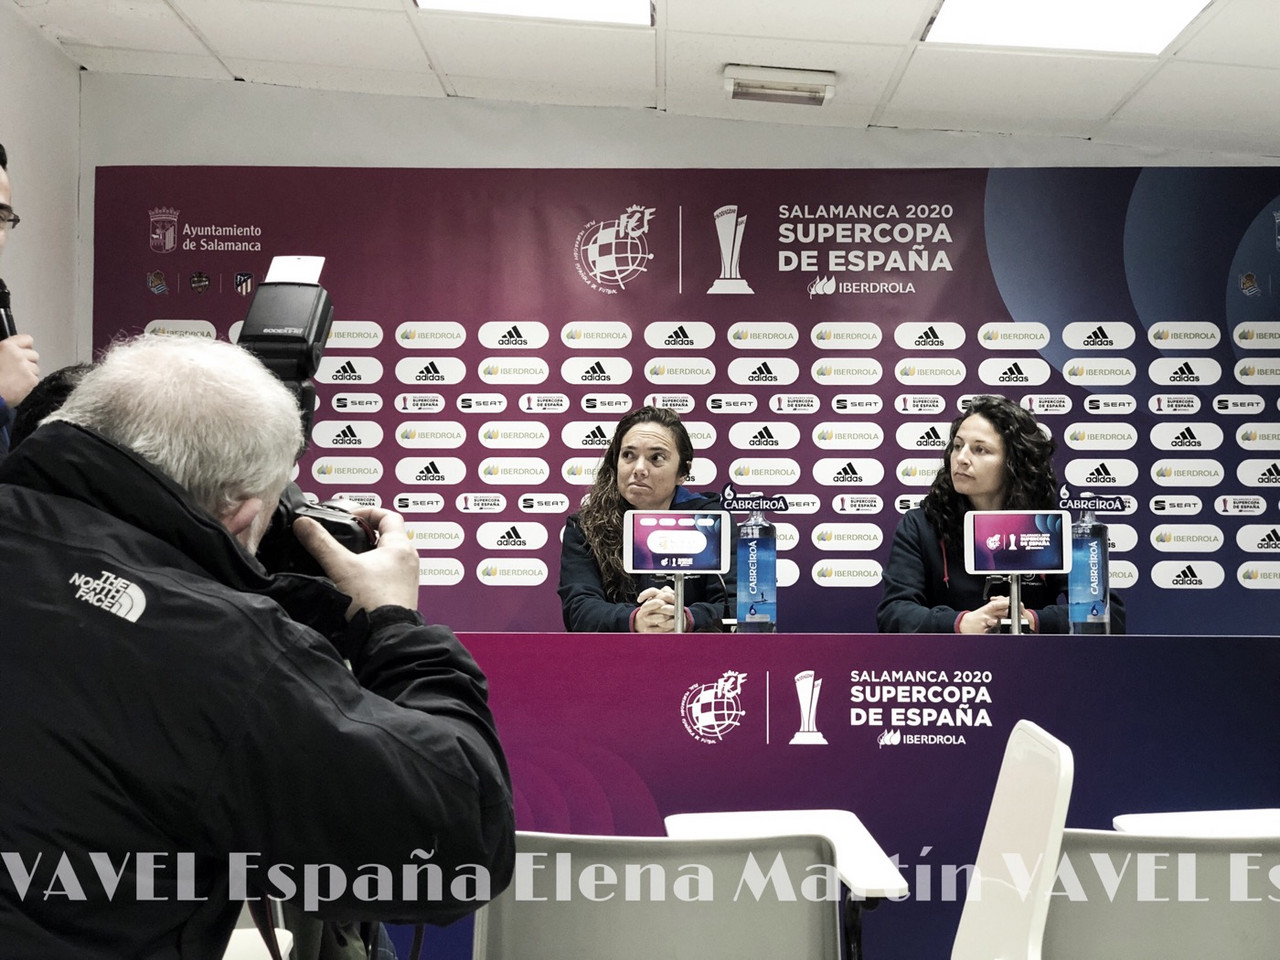 María Pry: "Queremos darle las gracias a la Real Federación Española de Fútbol por la gran visibilidad que le está dando al fútbol femenino"